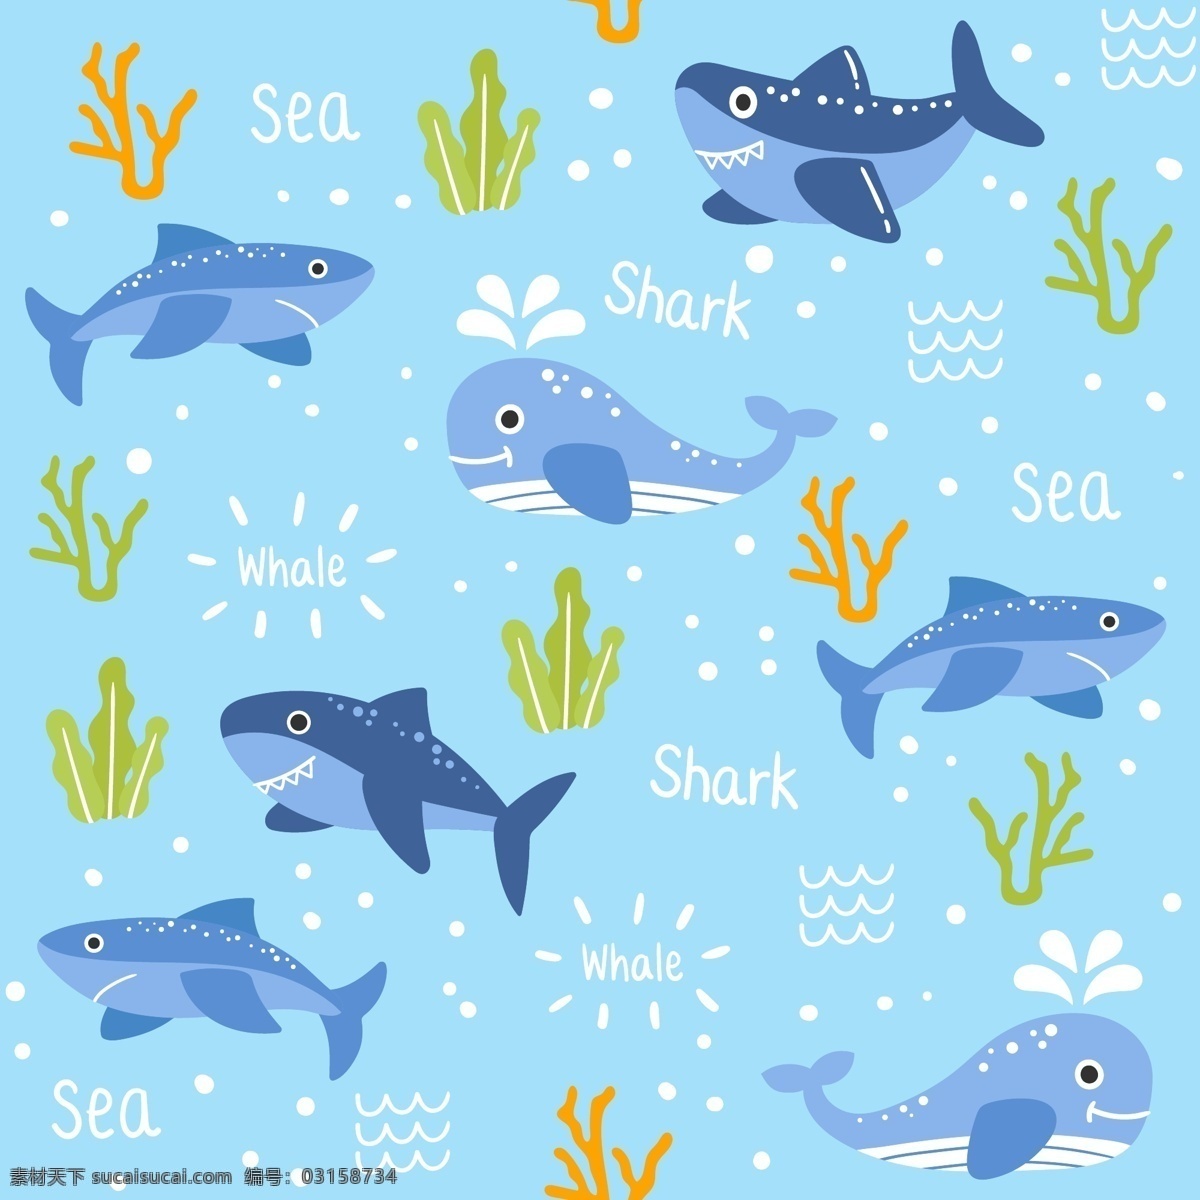 海洋 动物 文字 图案 背景 模式 水 手 模板 自然 海 手绘的 排版 字体 涂鸦 文本 丰富多彩的 草图 绘图 有趣的 鲨鱼 鲸鱼 词 海豚 无缝的 话 绘制 野生的 粗略的 书法的 野生动物 底纹边框 背景底纹